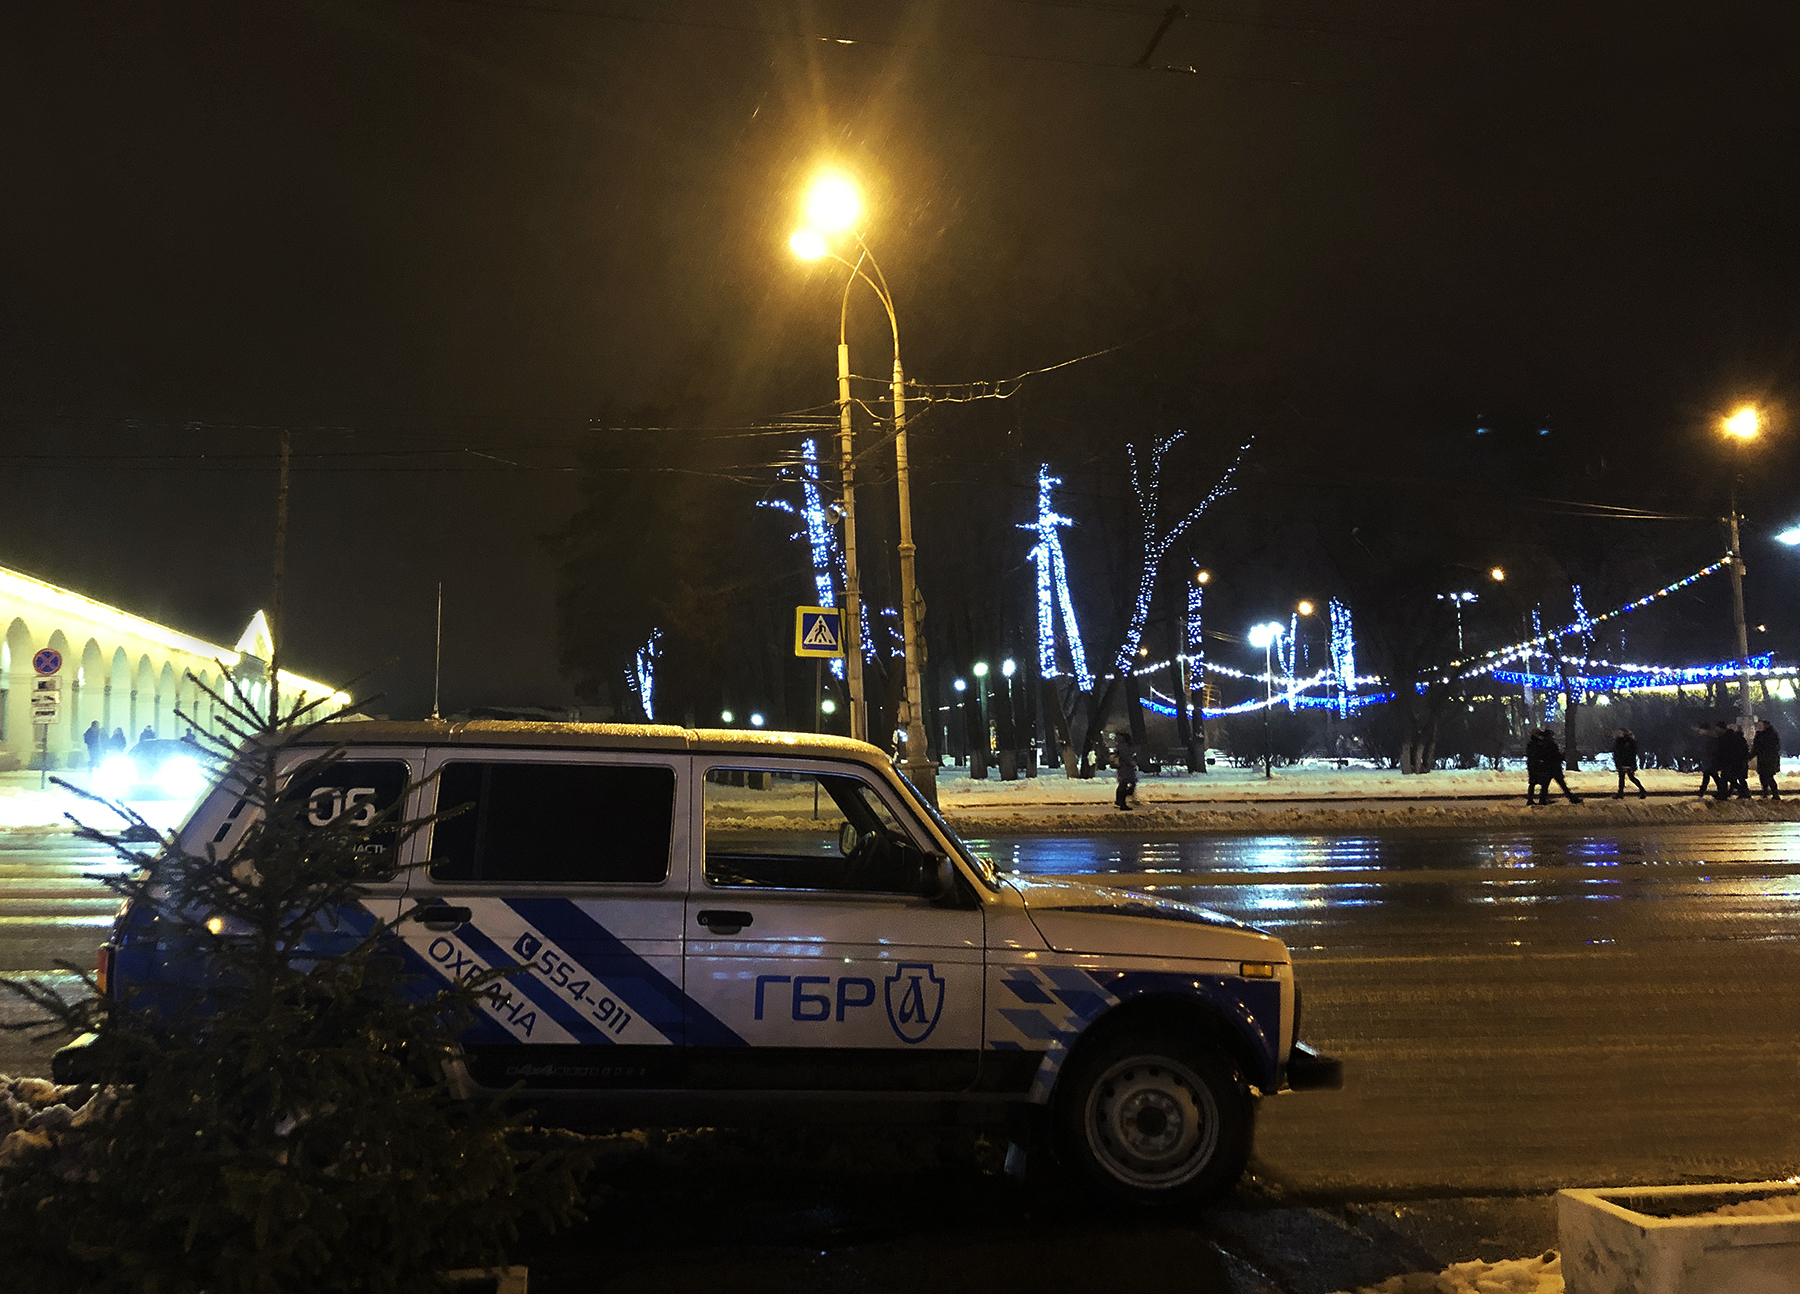 Новый год 2020 Кострома дежурство ГБР Патруль Безопасности в новогоднюю ночь в Костроме